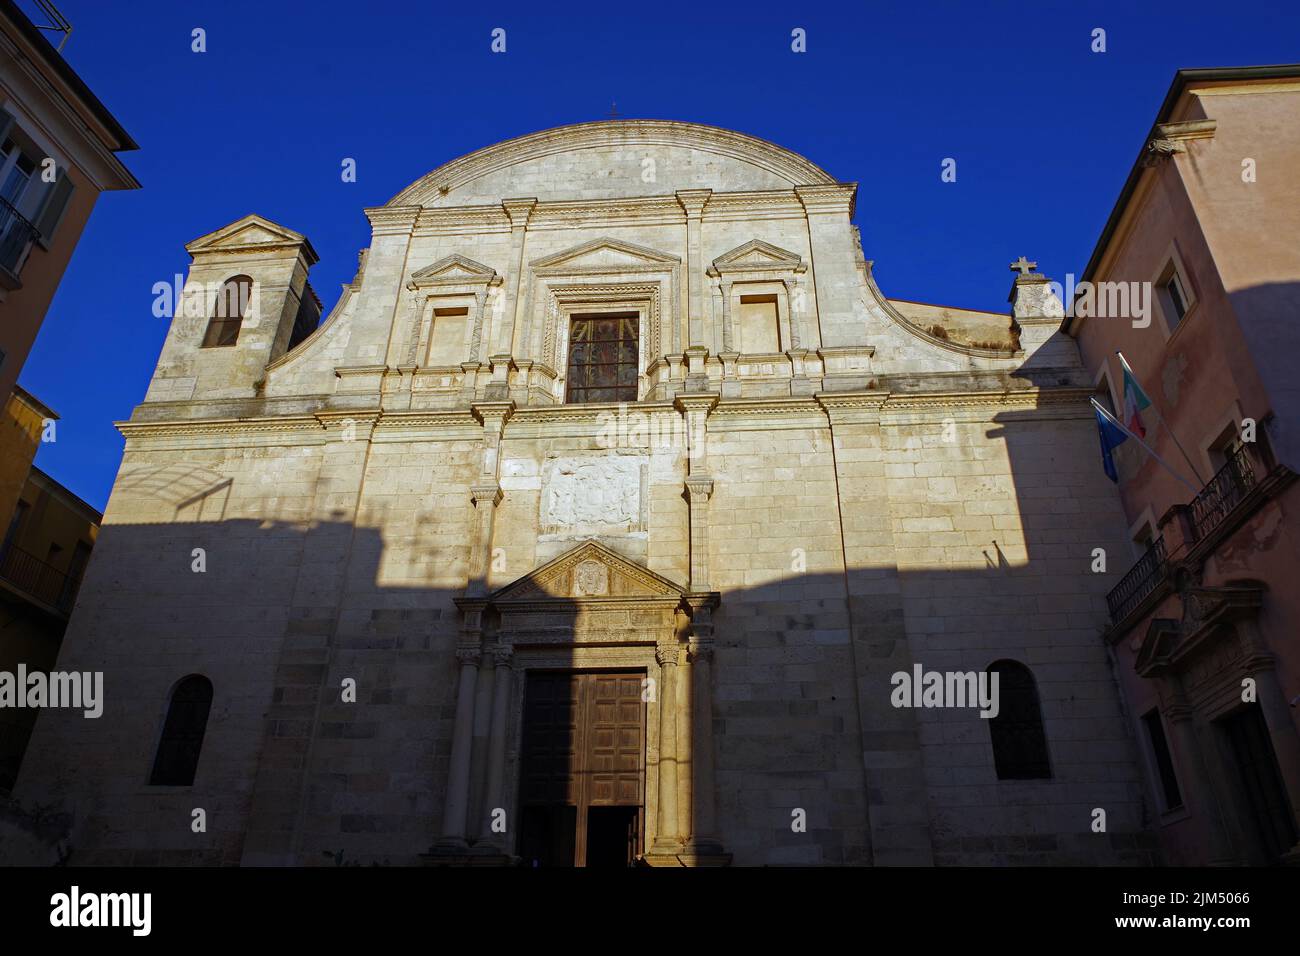 Santa Caterina church in Sassari, Sardinia, Italy Stock Photo